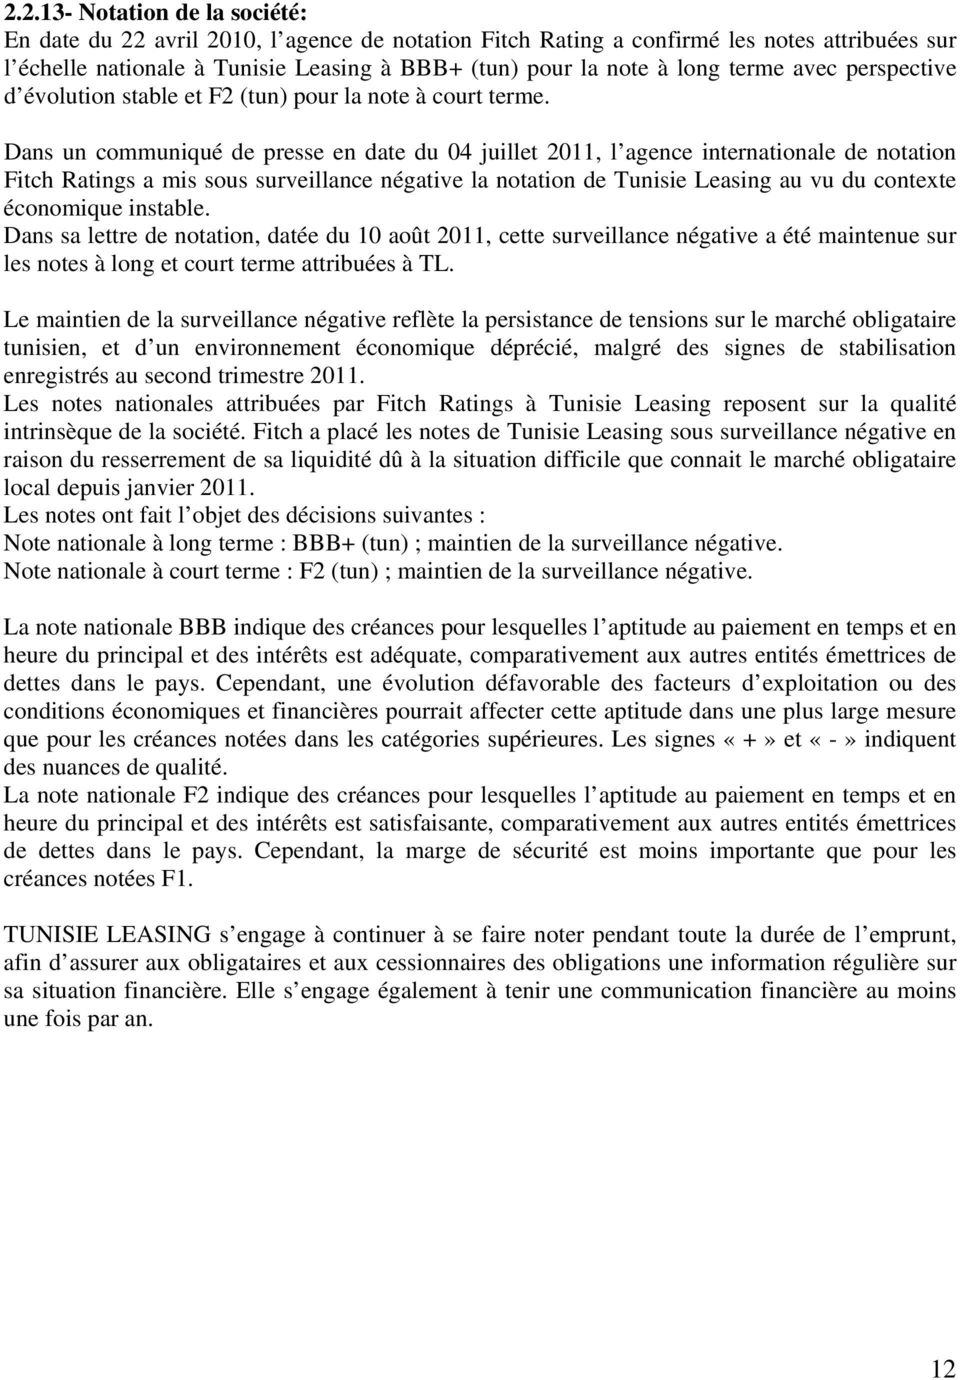 Dans un communiqué de presse en date du 04 juillet 2011, l agence internationale de notation Fitch Ratings a mis sous surveillance négative la notation de Tunisie Leasing au vu du contexte économique